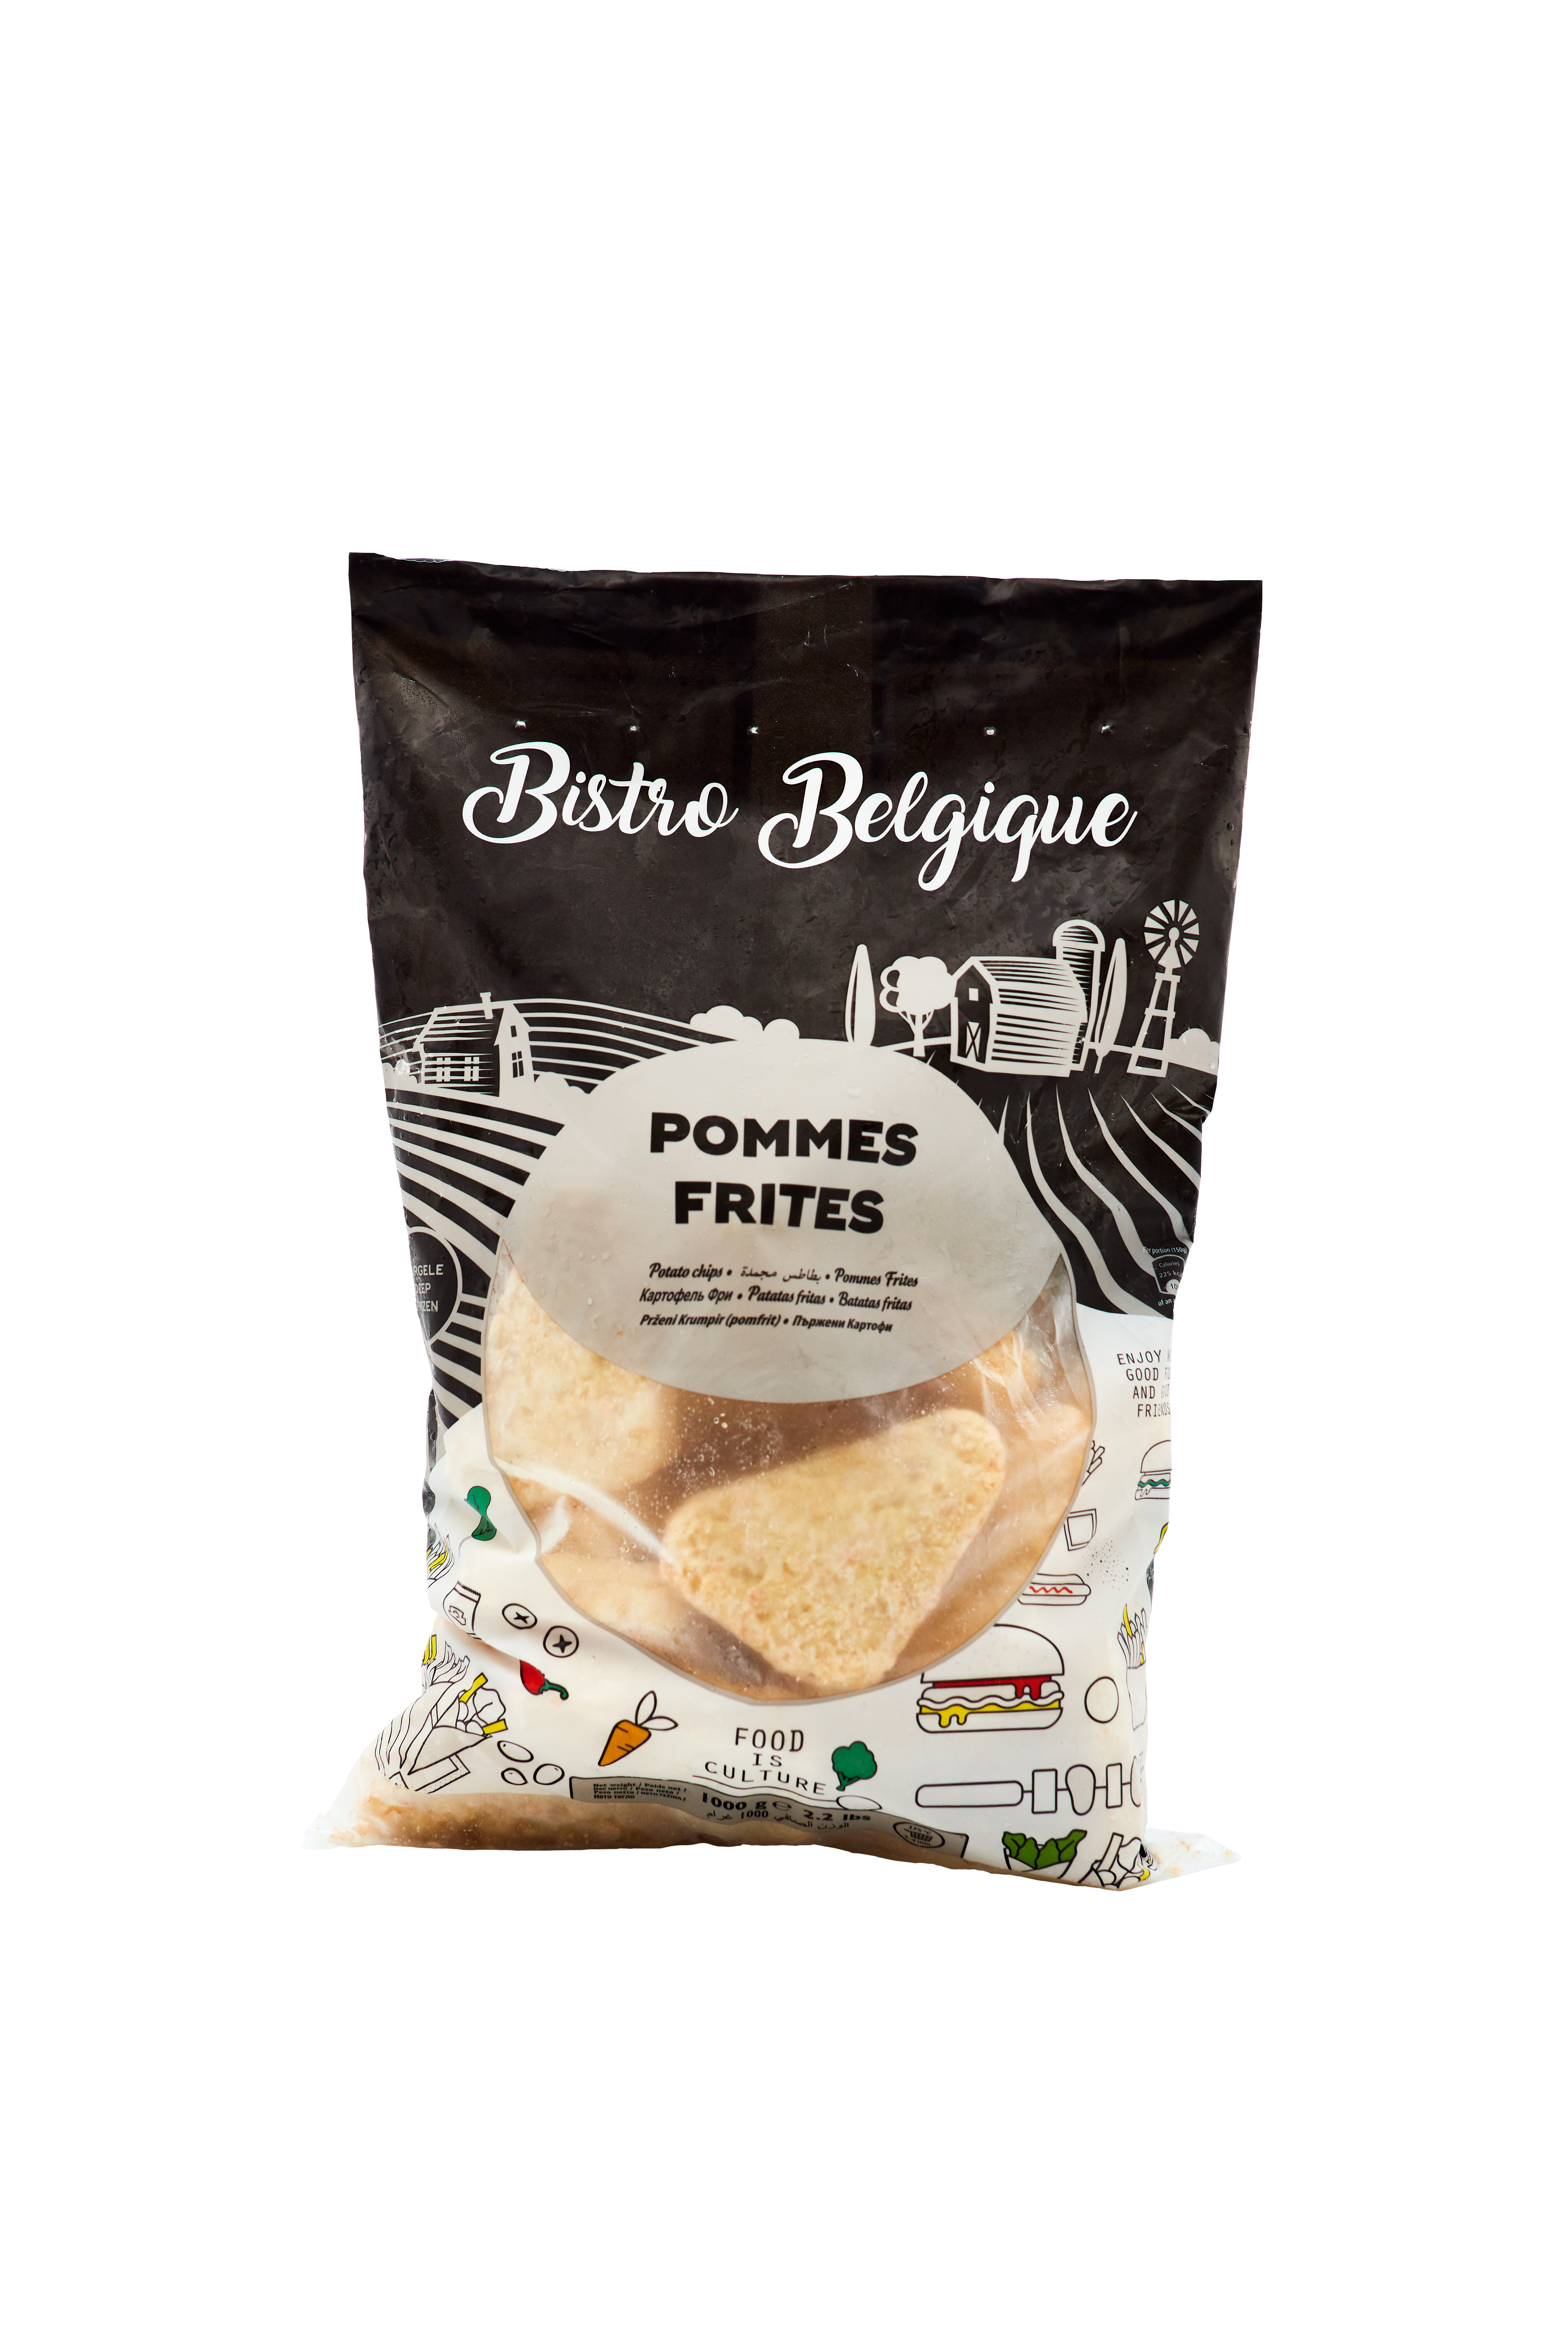 Wedges Skin on packaging Bistro Belgique brand